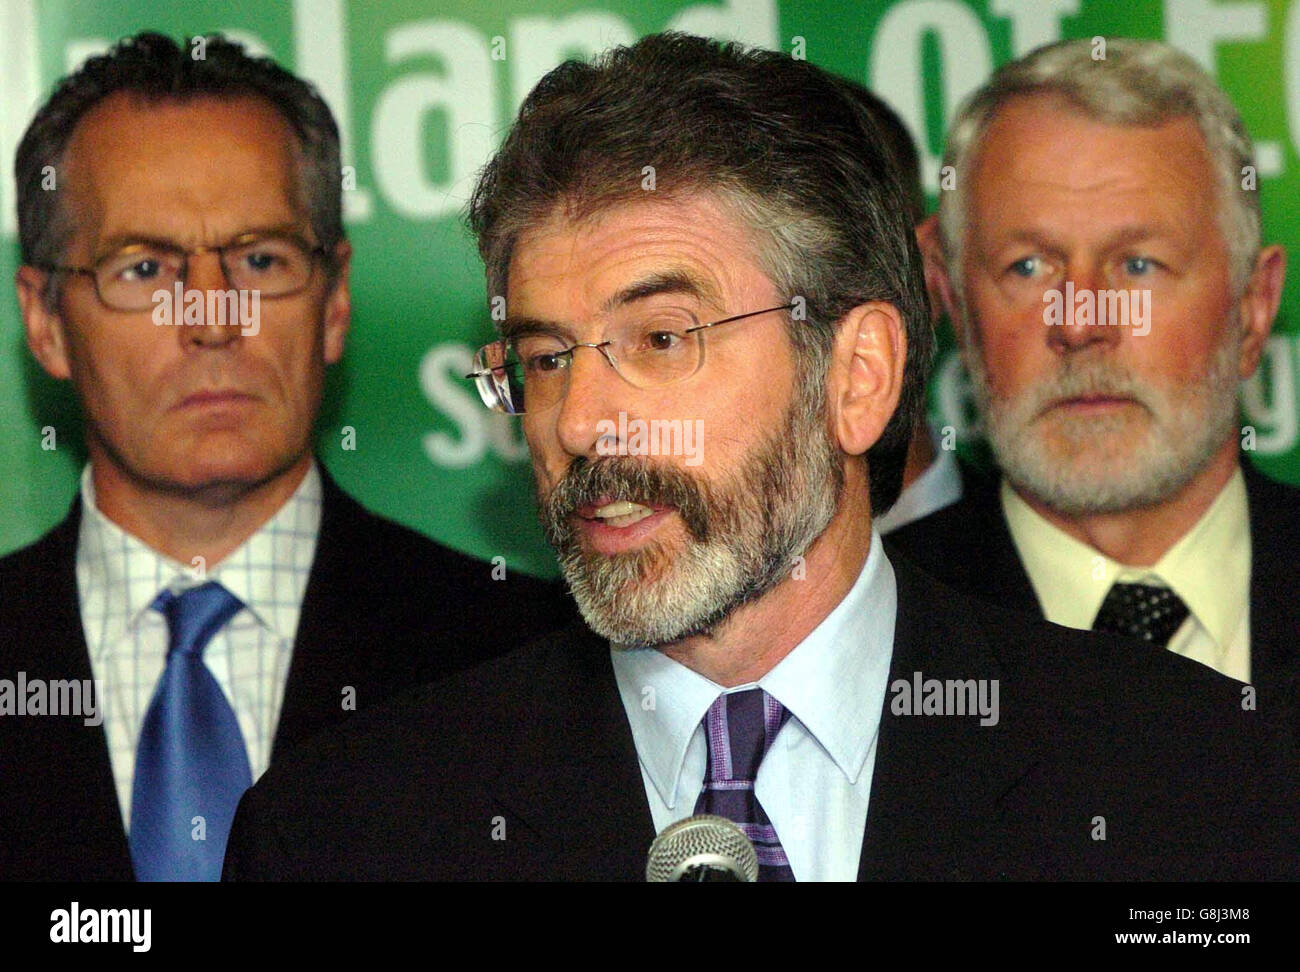 Sinn Fein leader, Gerry Adams e membri del Partito Gerry Kelly, a sinistra, e Martin Ferris, a destra, a seguito di una dichiarazione IRA che dice l'organizzazione cesserà tutte le attività future e inizierà a decommissionare le sue armi alle 1600. Foto Stock